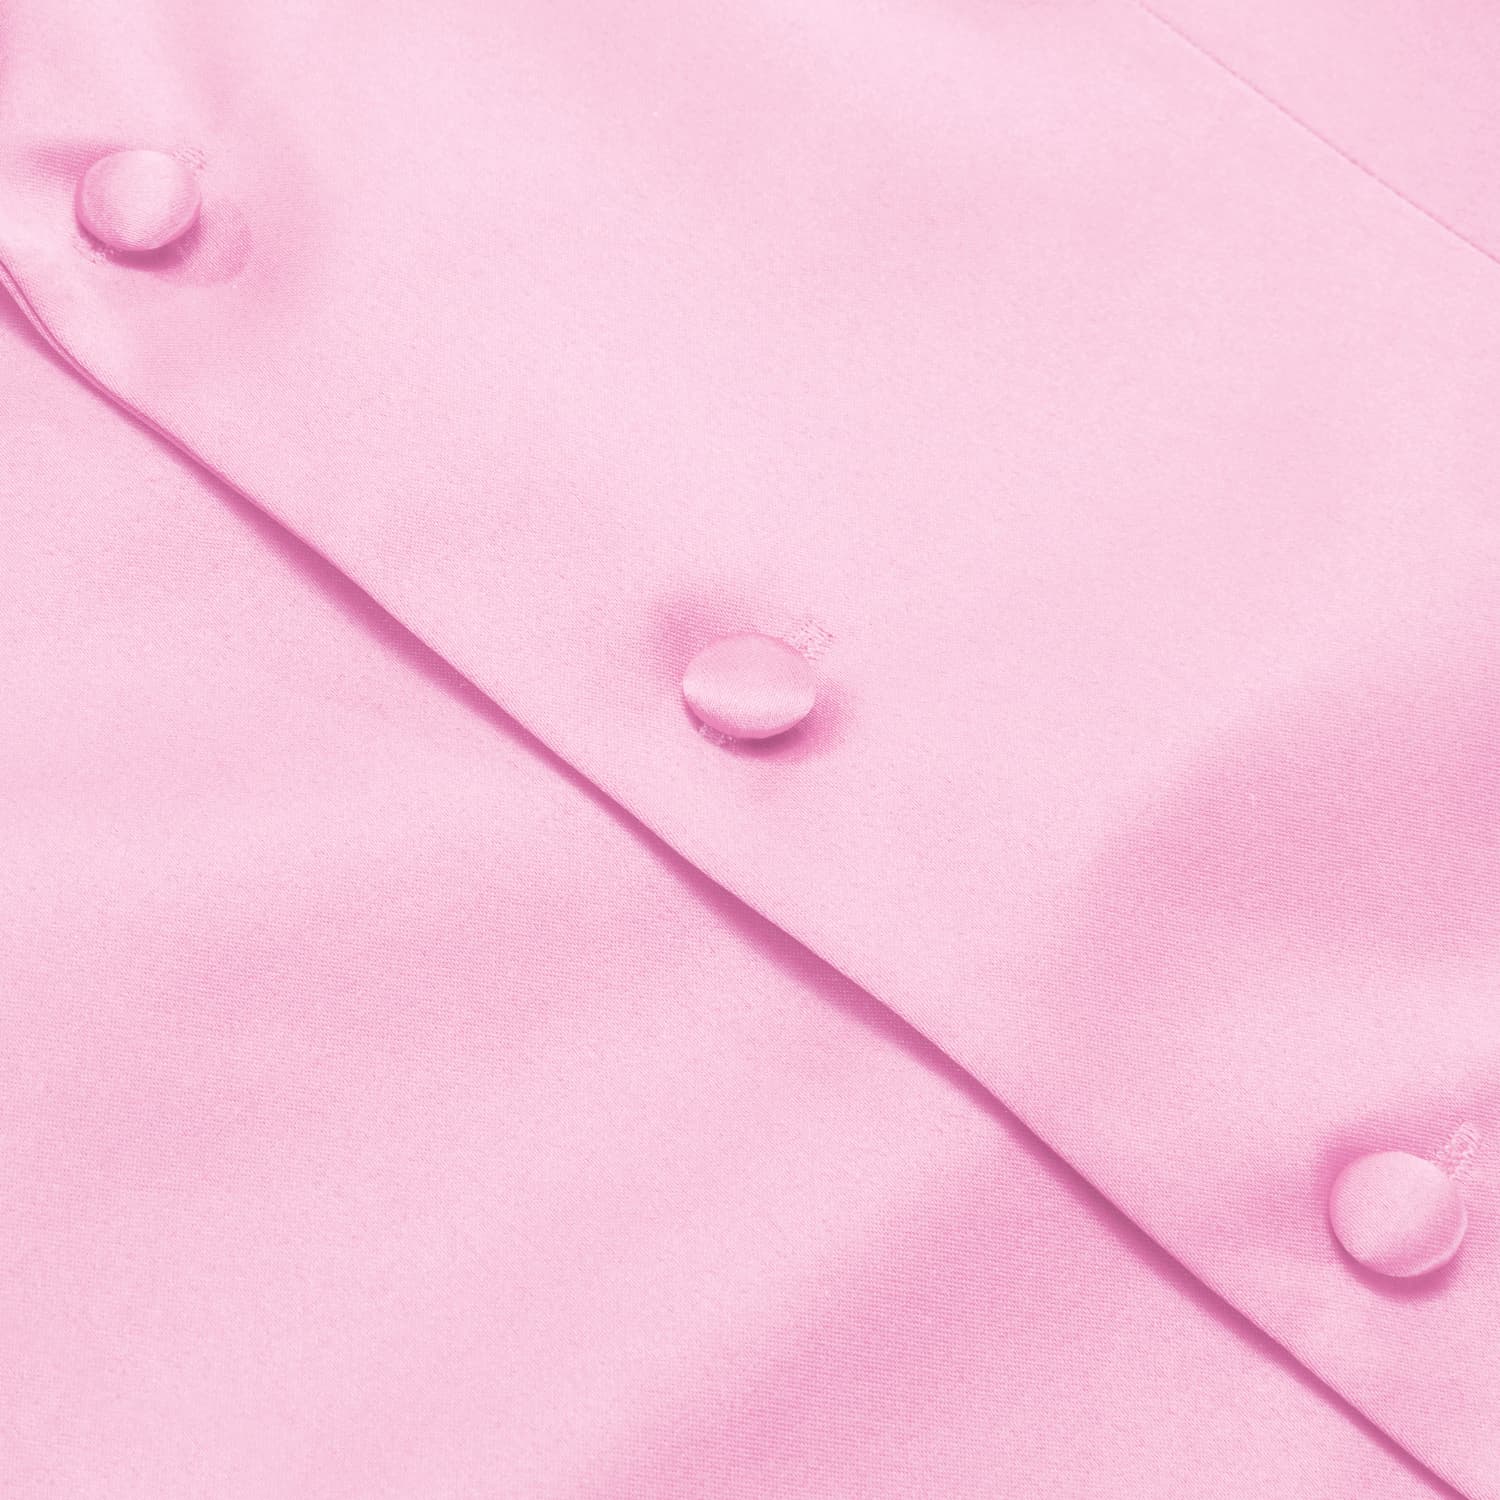 Hi-Tie Baby Pink Waistcoat Solid Notch lapels Men's Vest